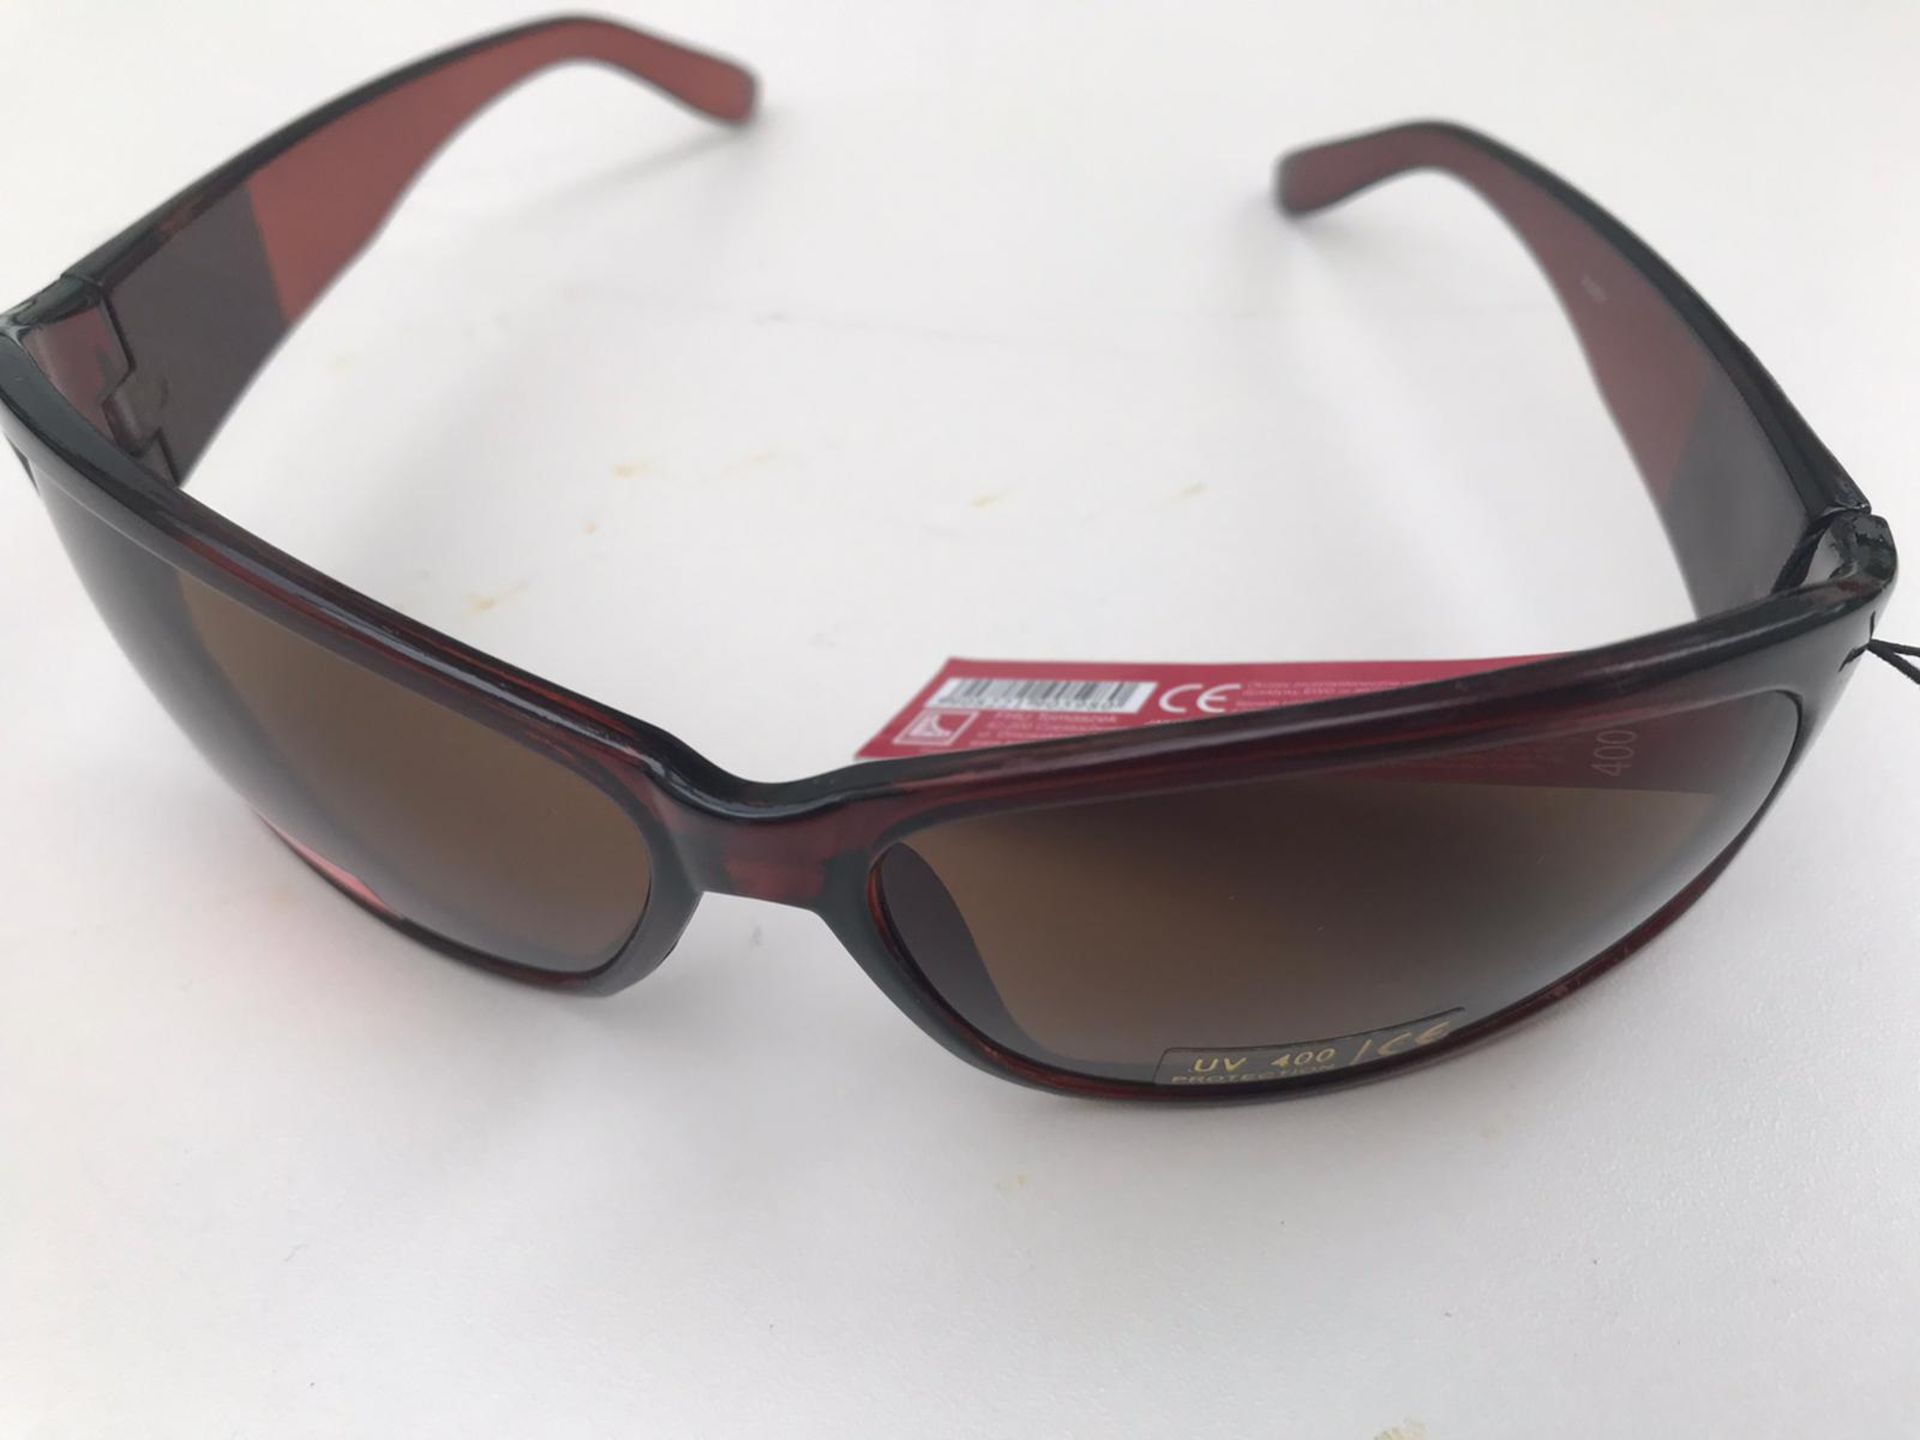 500x La Lu Branded Sunglasses | Various Styles | Unopened & Unused - Image 12 of 33